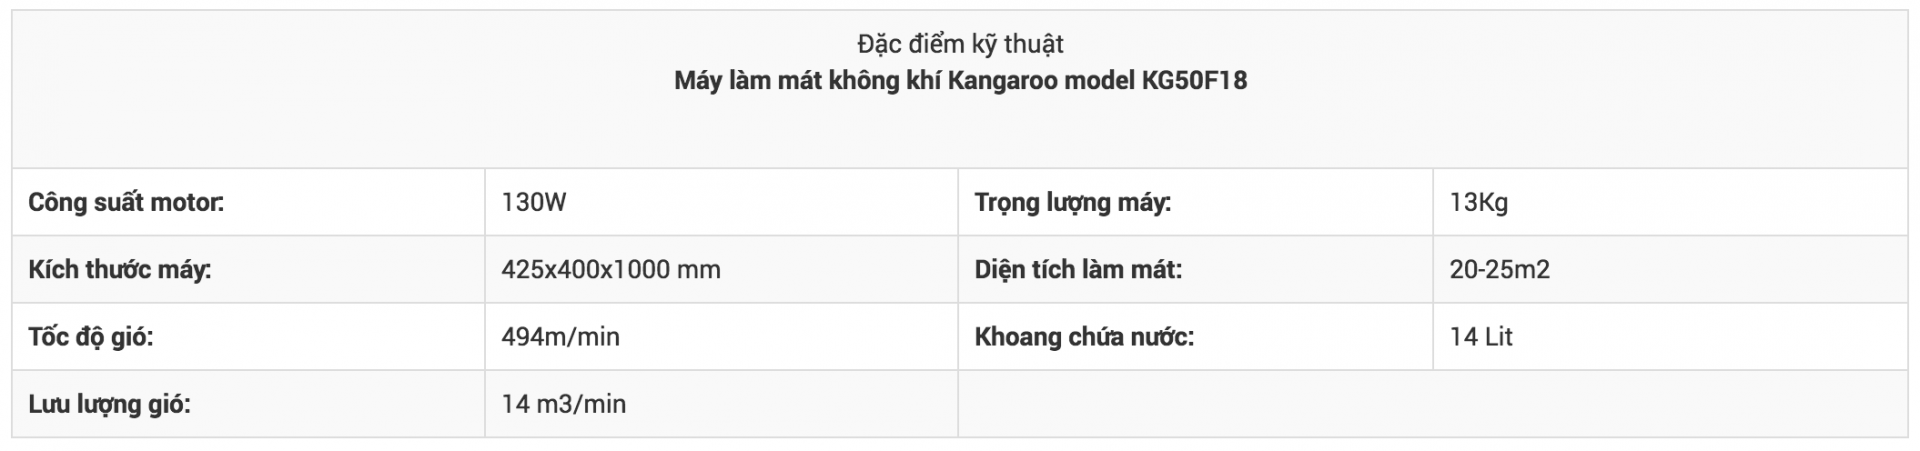 thong-so-ky-thuat-Kangaroo KG50F18